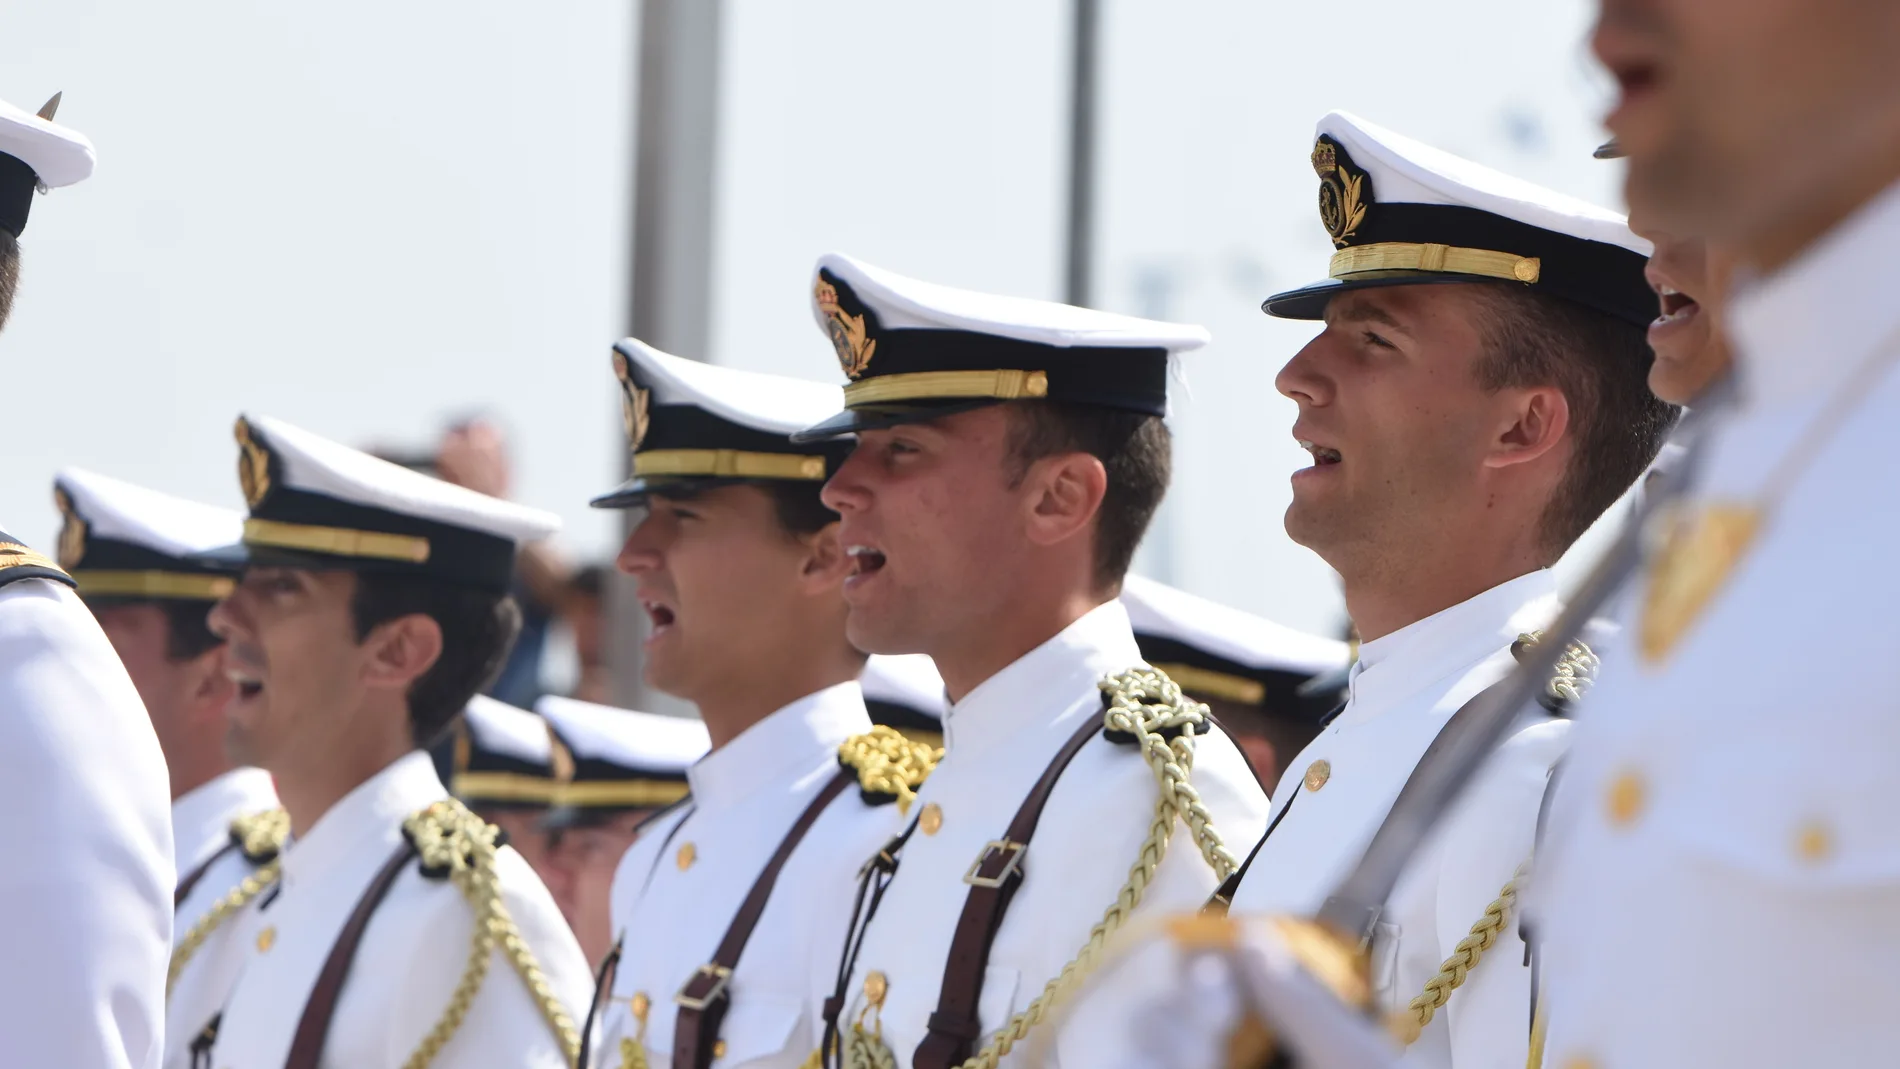 Miembros de la Armada